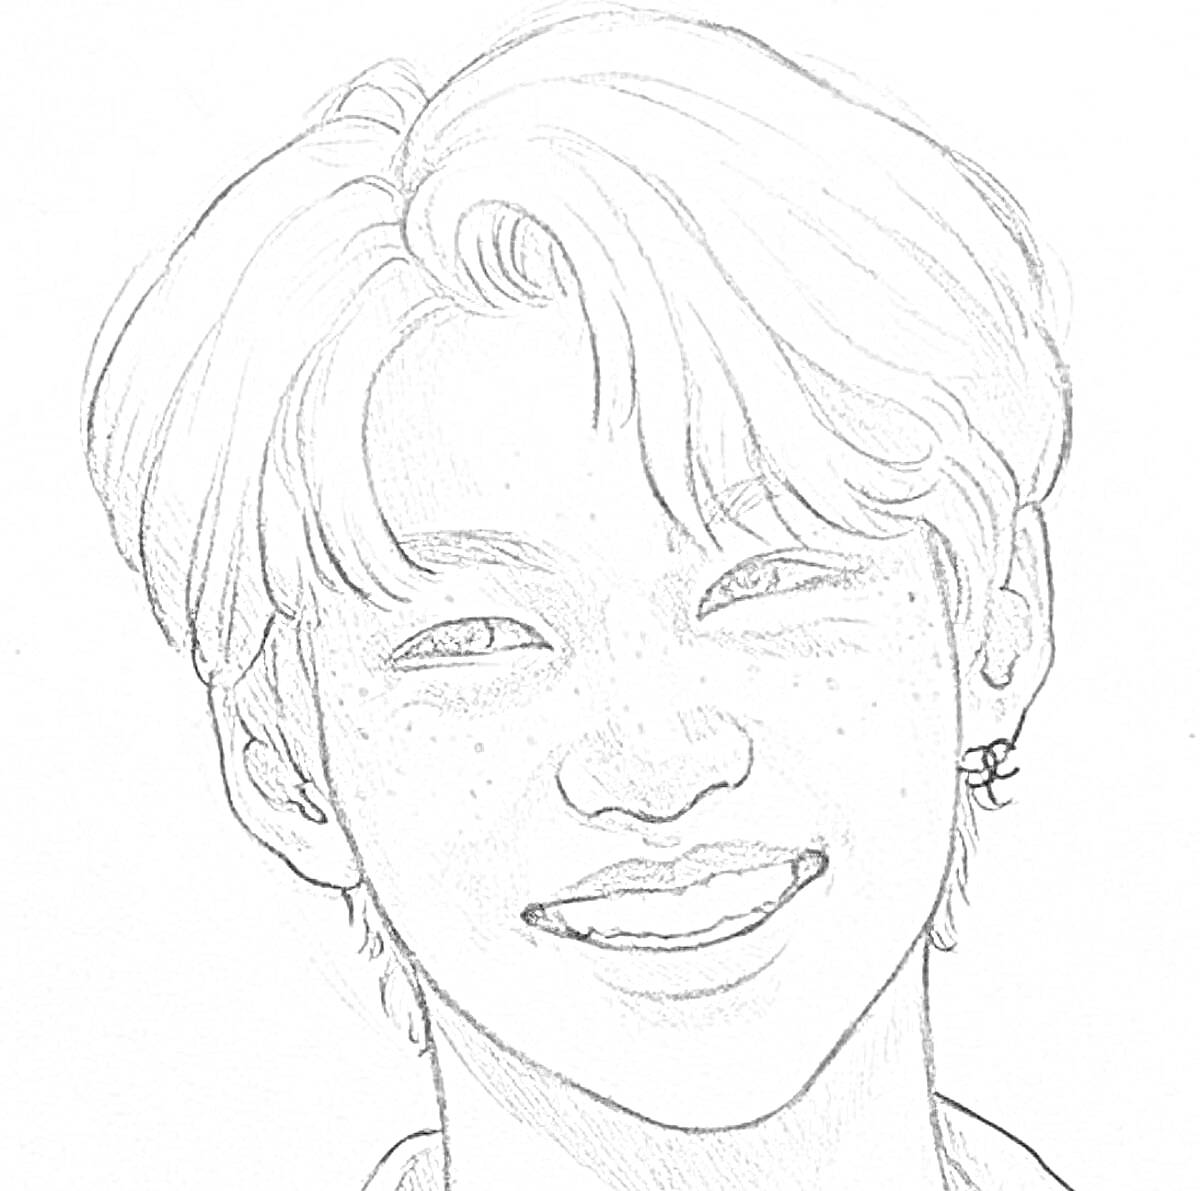 Раскраска Портрет улыбающегося человека с короткими волосами, серьгой и веснушками